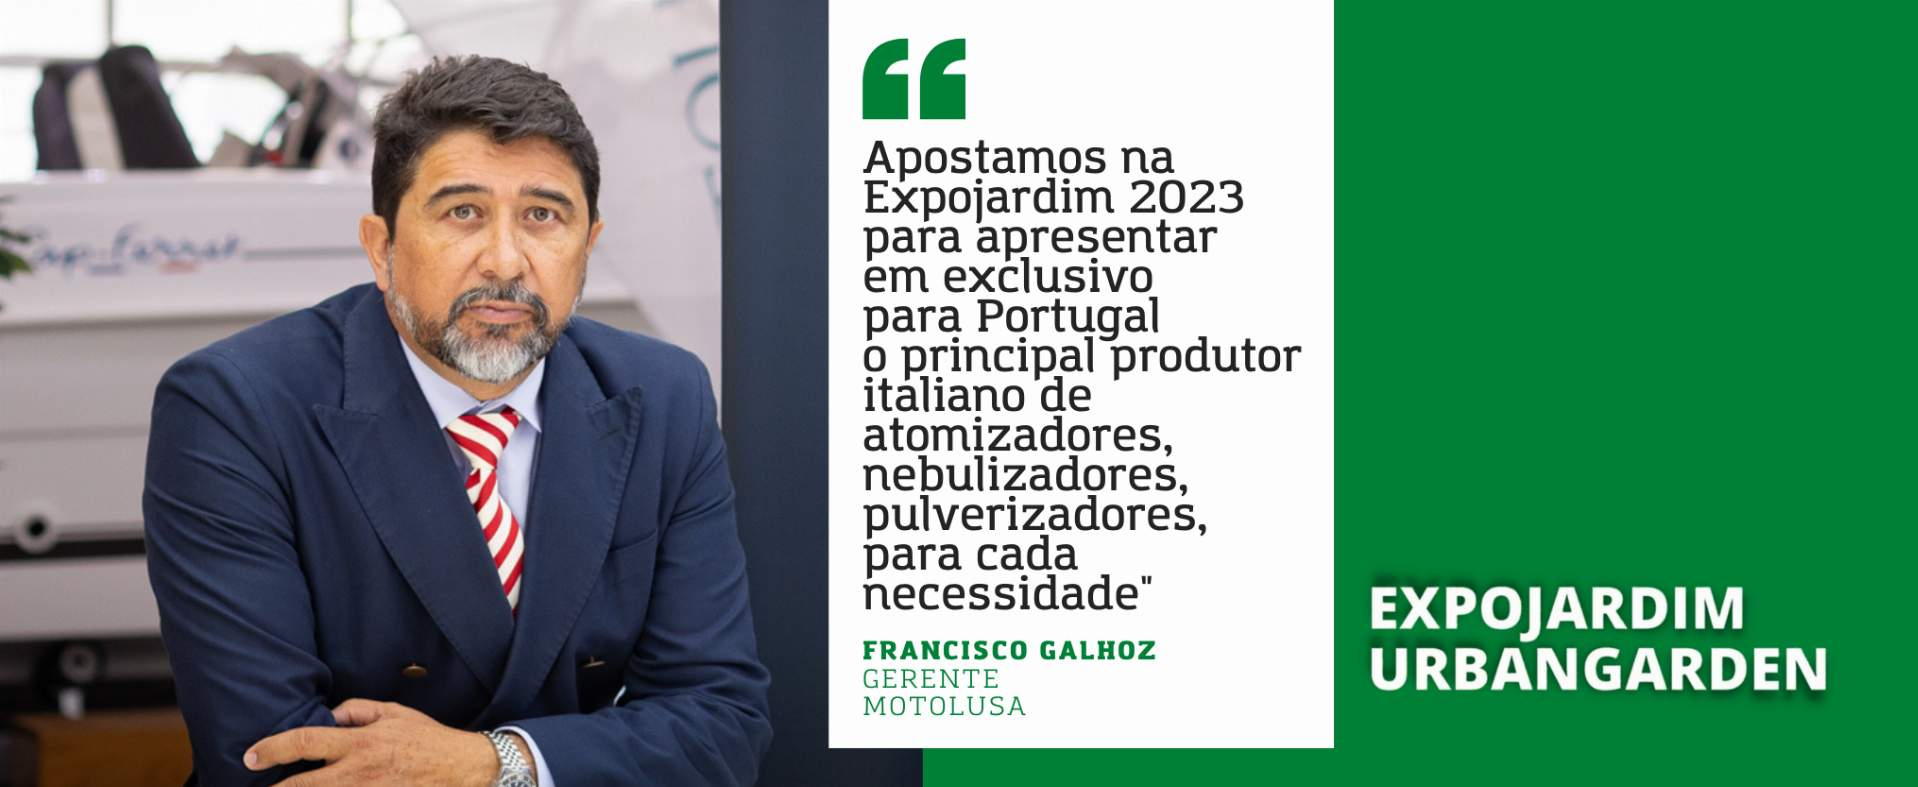 Motolusa: “Apostamos na Expojardim 2023 para apresentar em exclusivo para Portugal o principal produtor italiano de atomizadores, nebulizadores, pulverizadores, para cada necessidade”